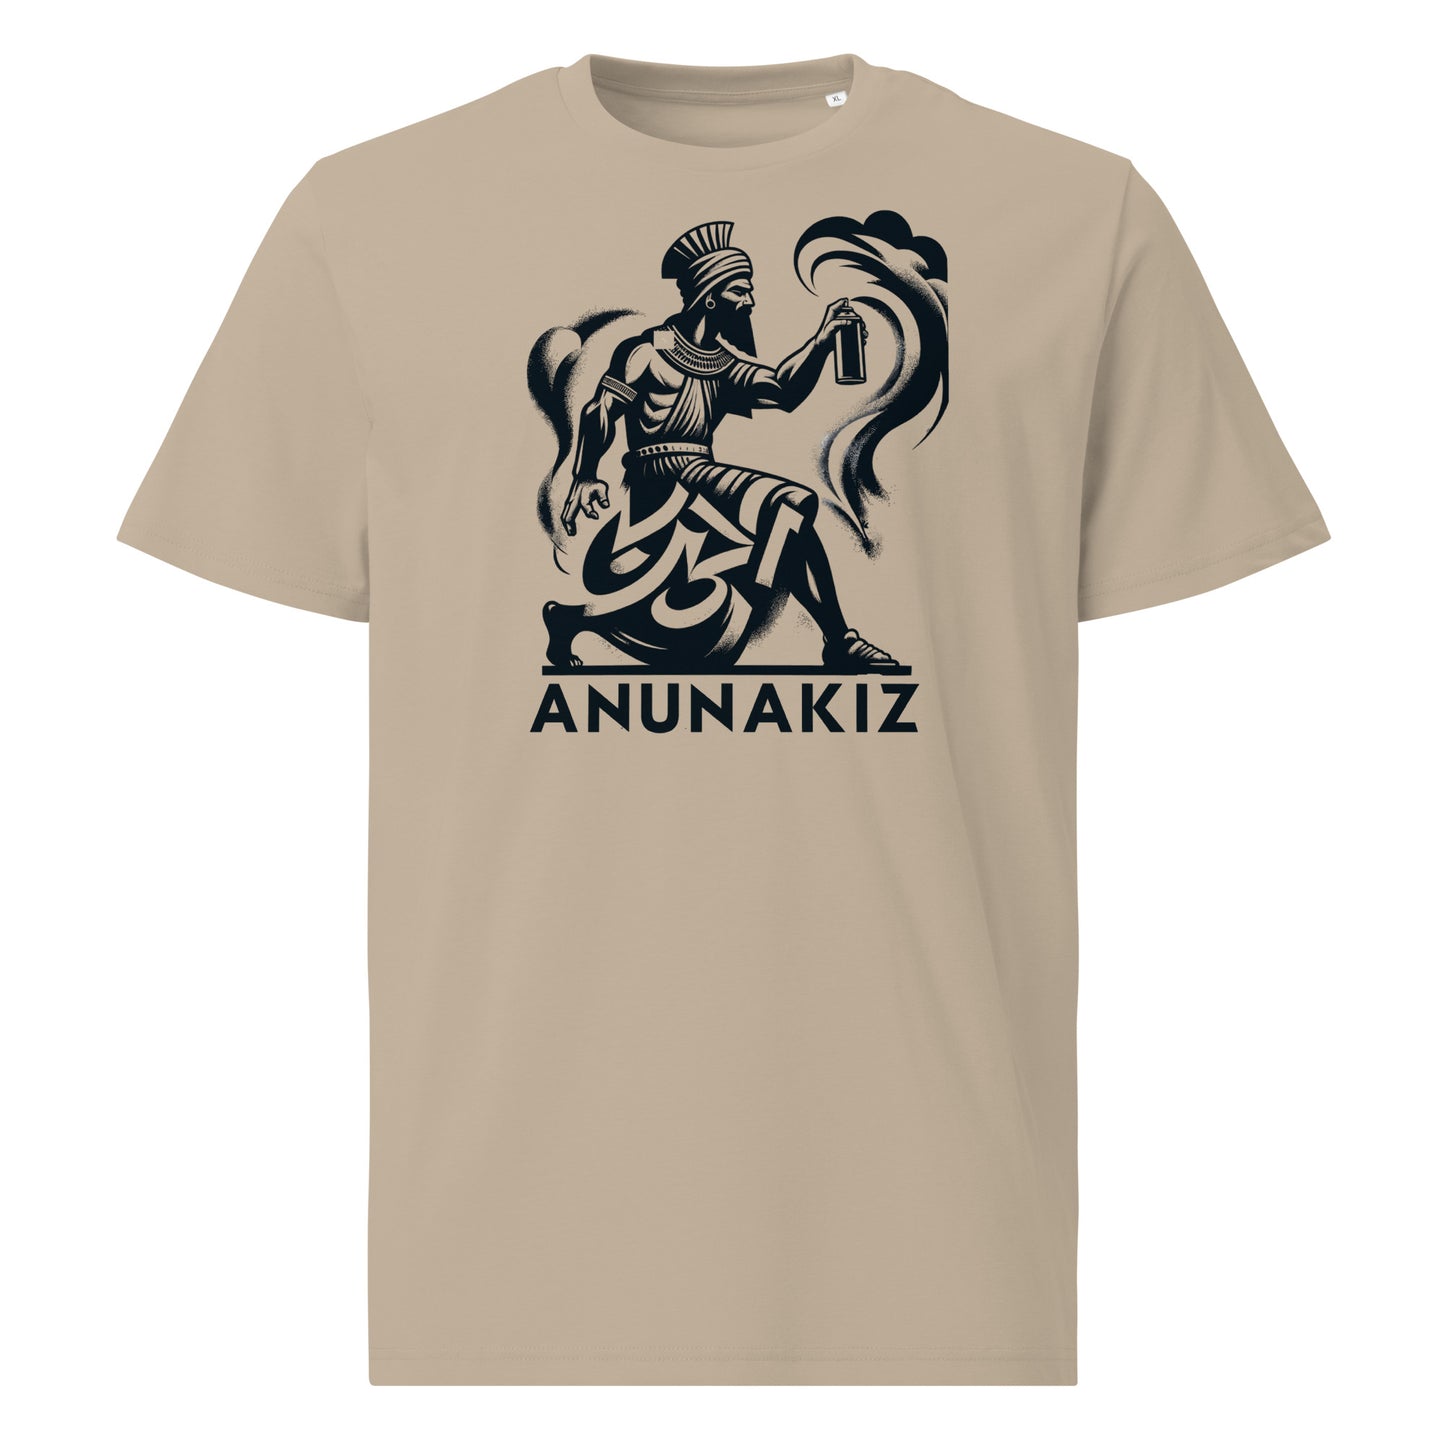 Anunakiz Assyrian Calligraffiti Unisex organic cotton t-shirt